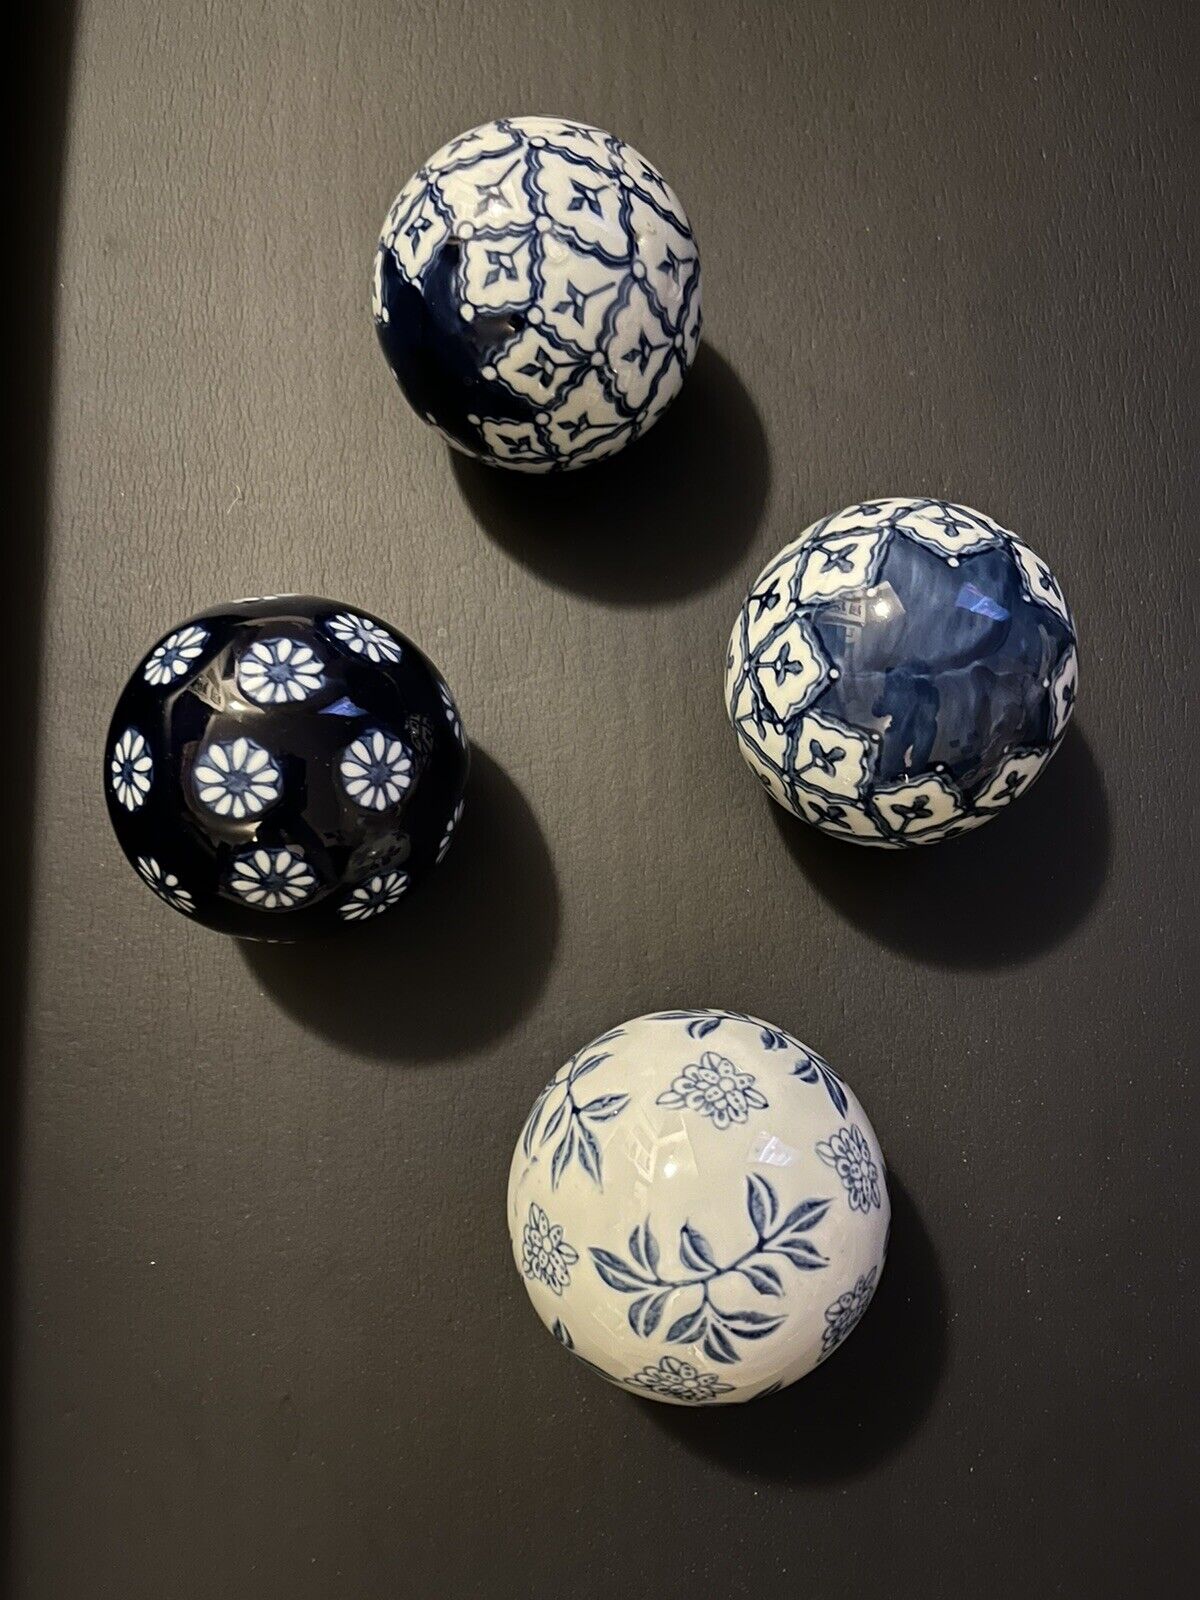 4 Blue & White Ceramic Porcelain Carpet Balls - 3 Inch